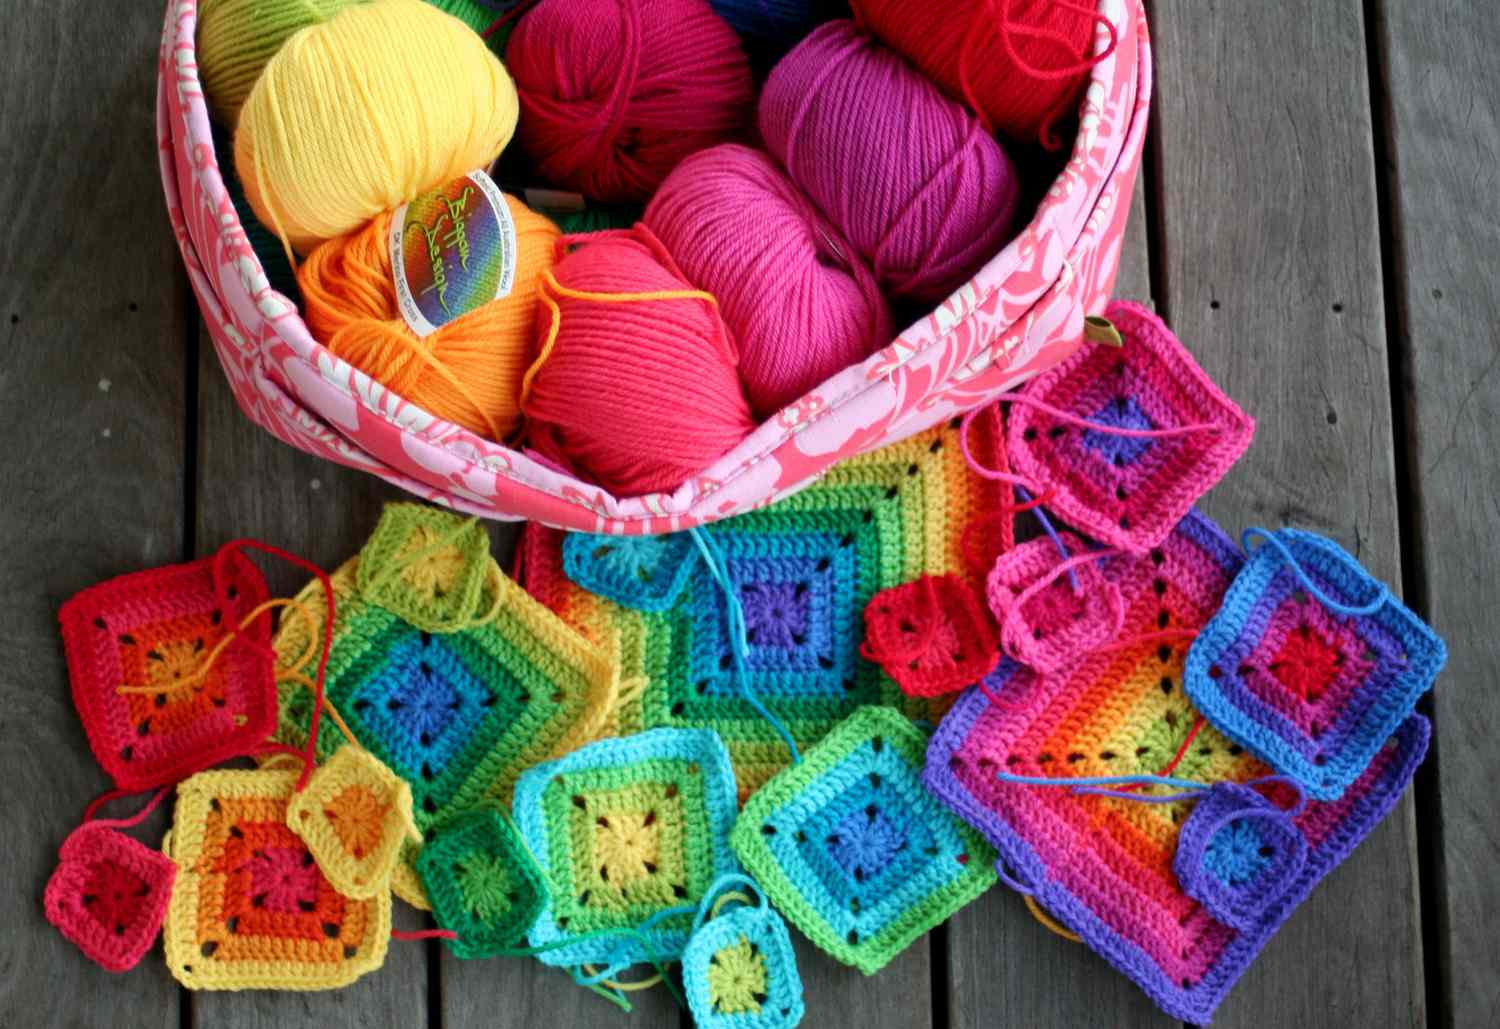 Crochet rainbow squares